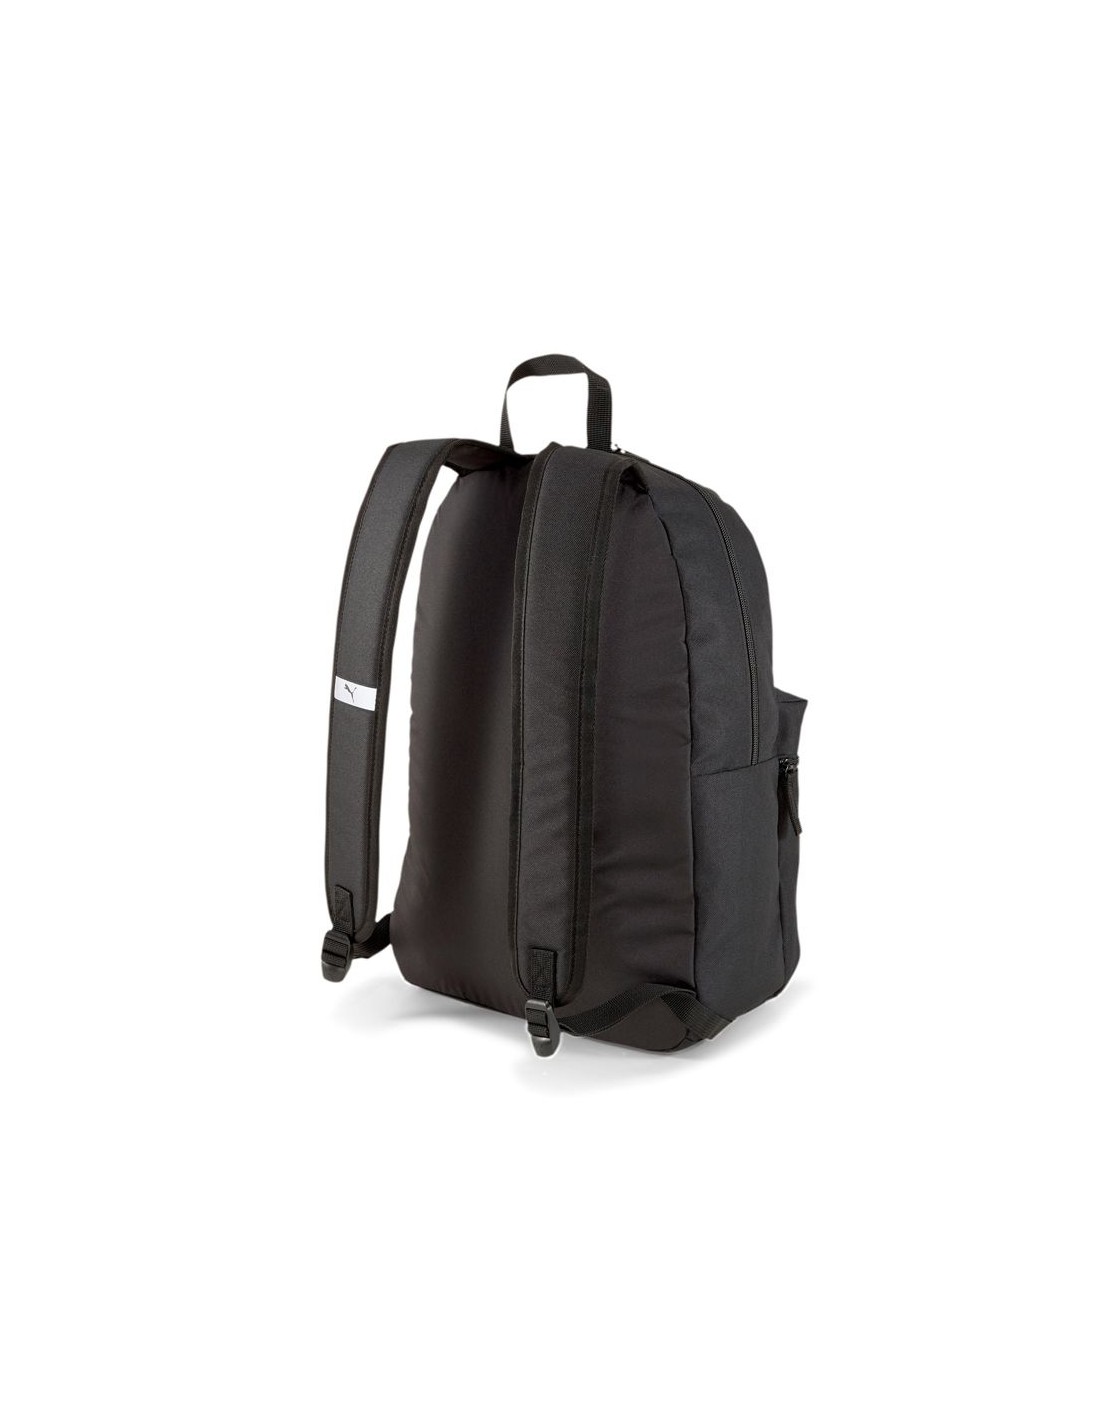 Puma teamGOAL 23 Core 076855 02 backpack